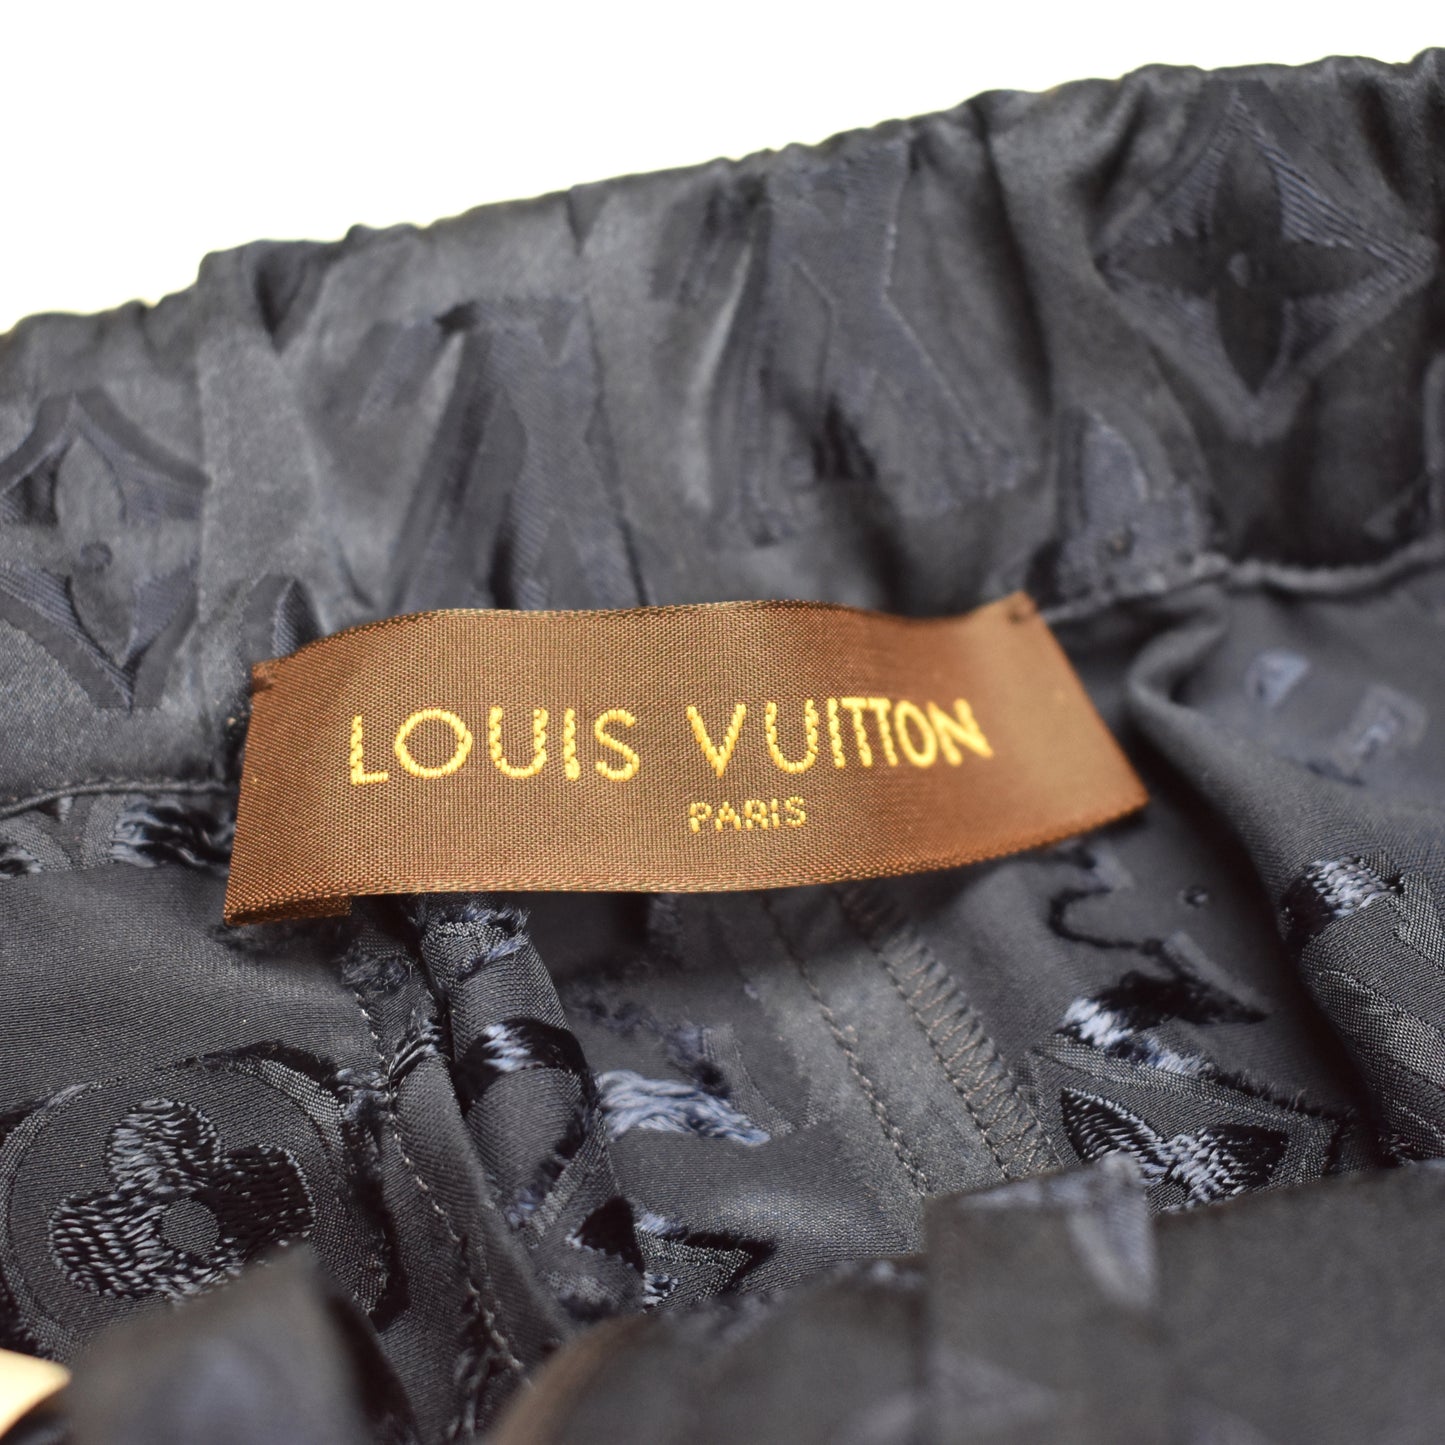 Supreme Louis Vuitton Pants ?!?!?!?! REAL VS FAKE !!!!! 